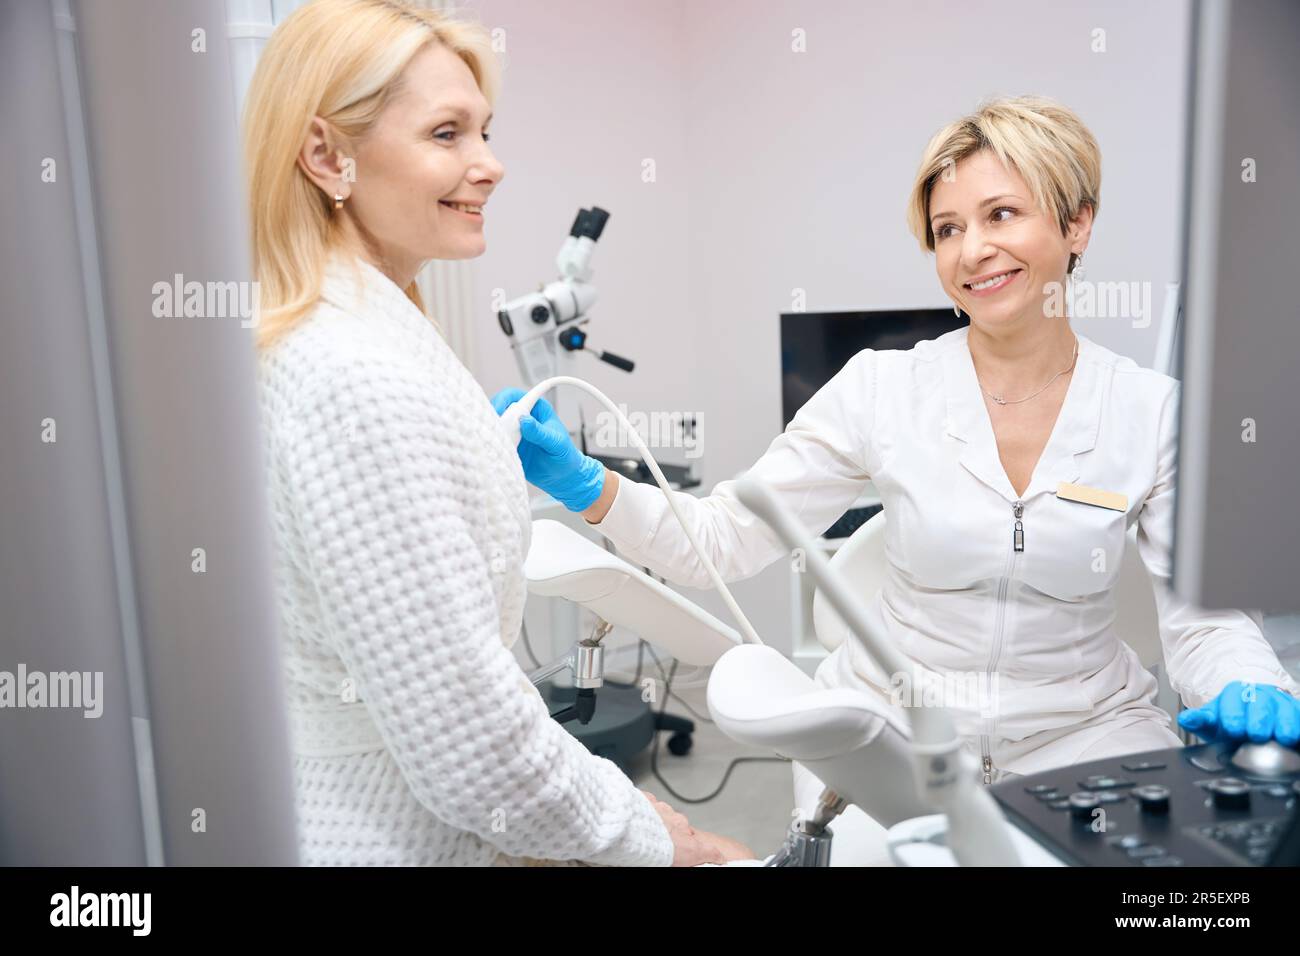 Patientin und Gynäkologe lächeln bei der Untersuchung der Brustdrüsen Stockfoto